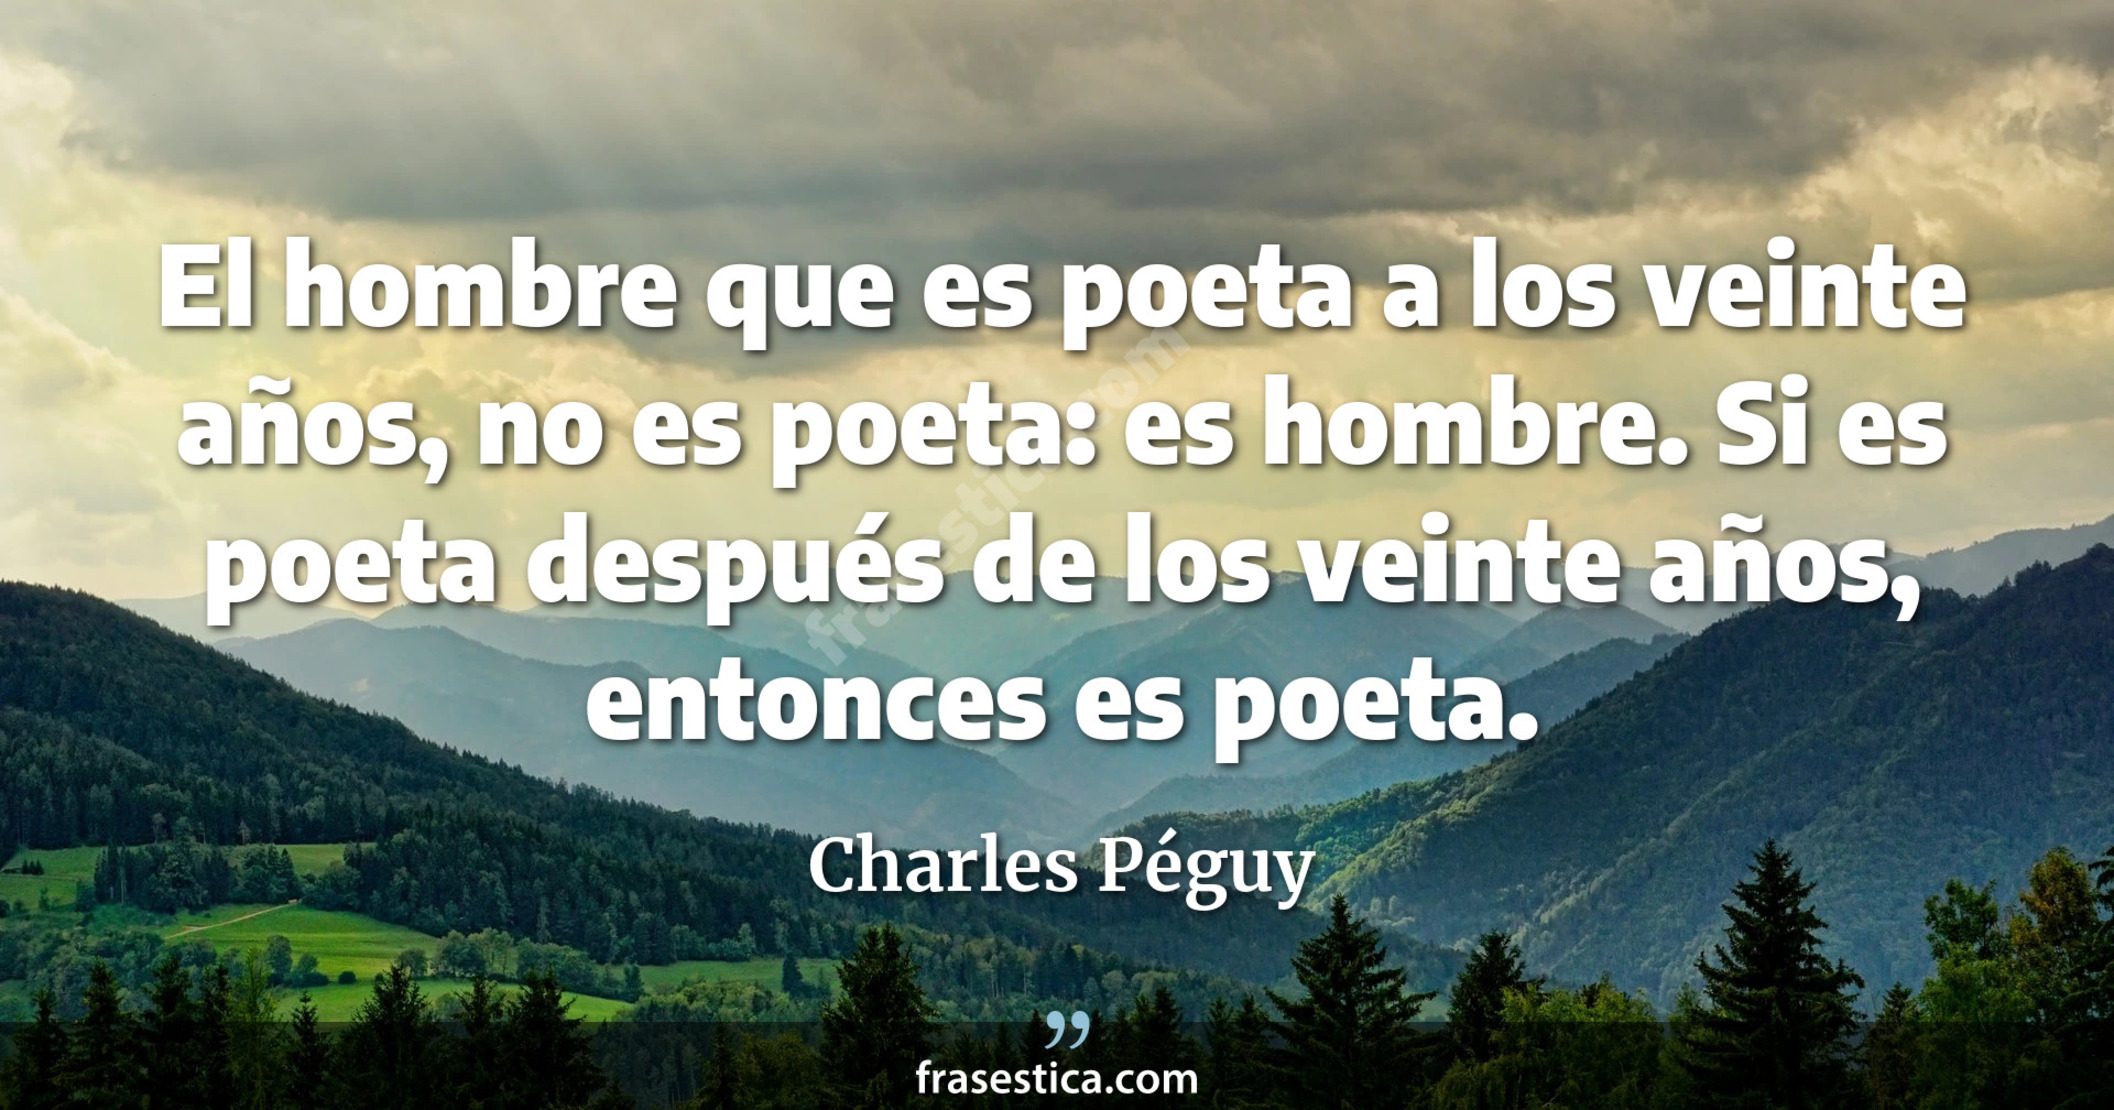 El hombre que es poeta a los veinte años, no es poeta: es hombre. Si es poeta después de los veinte años, entonces es poeta. - Charles Péguy